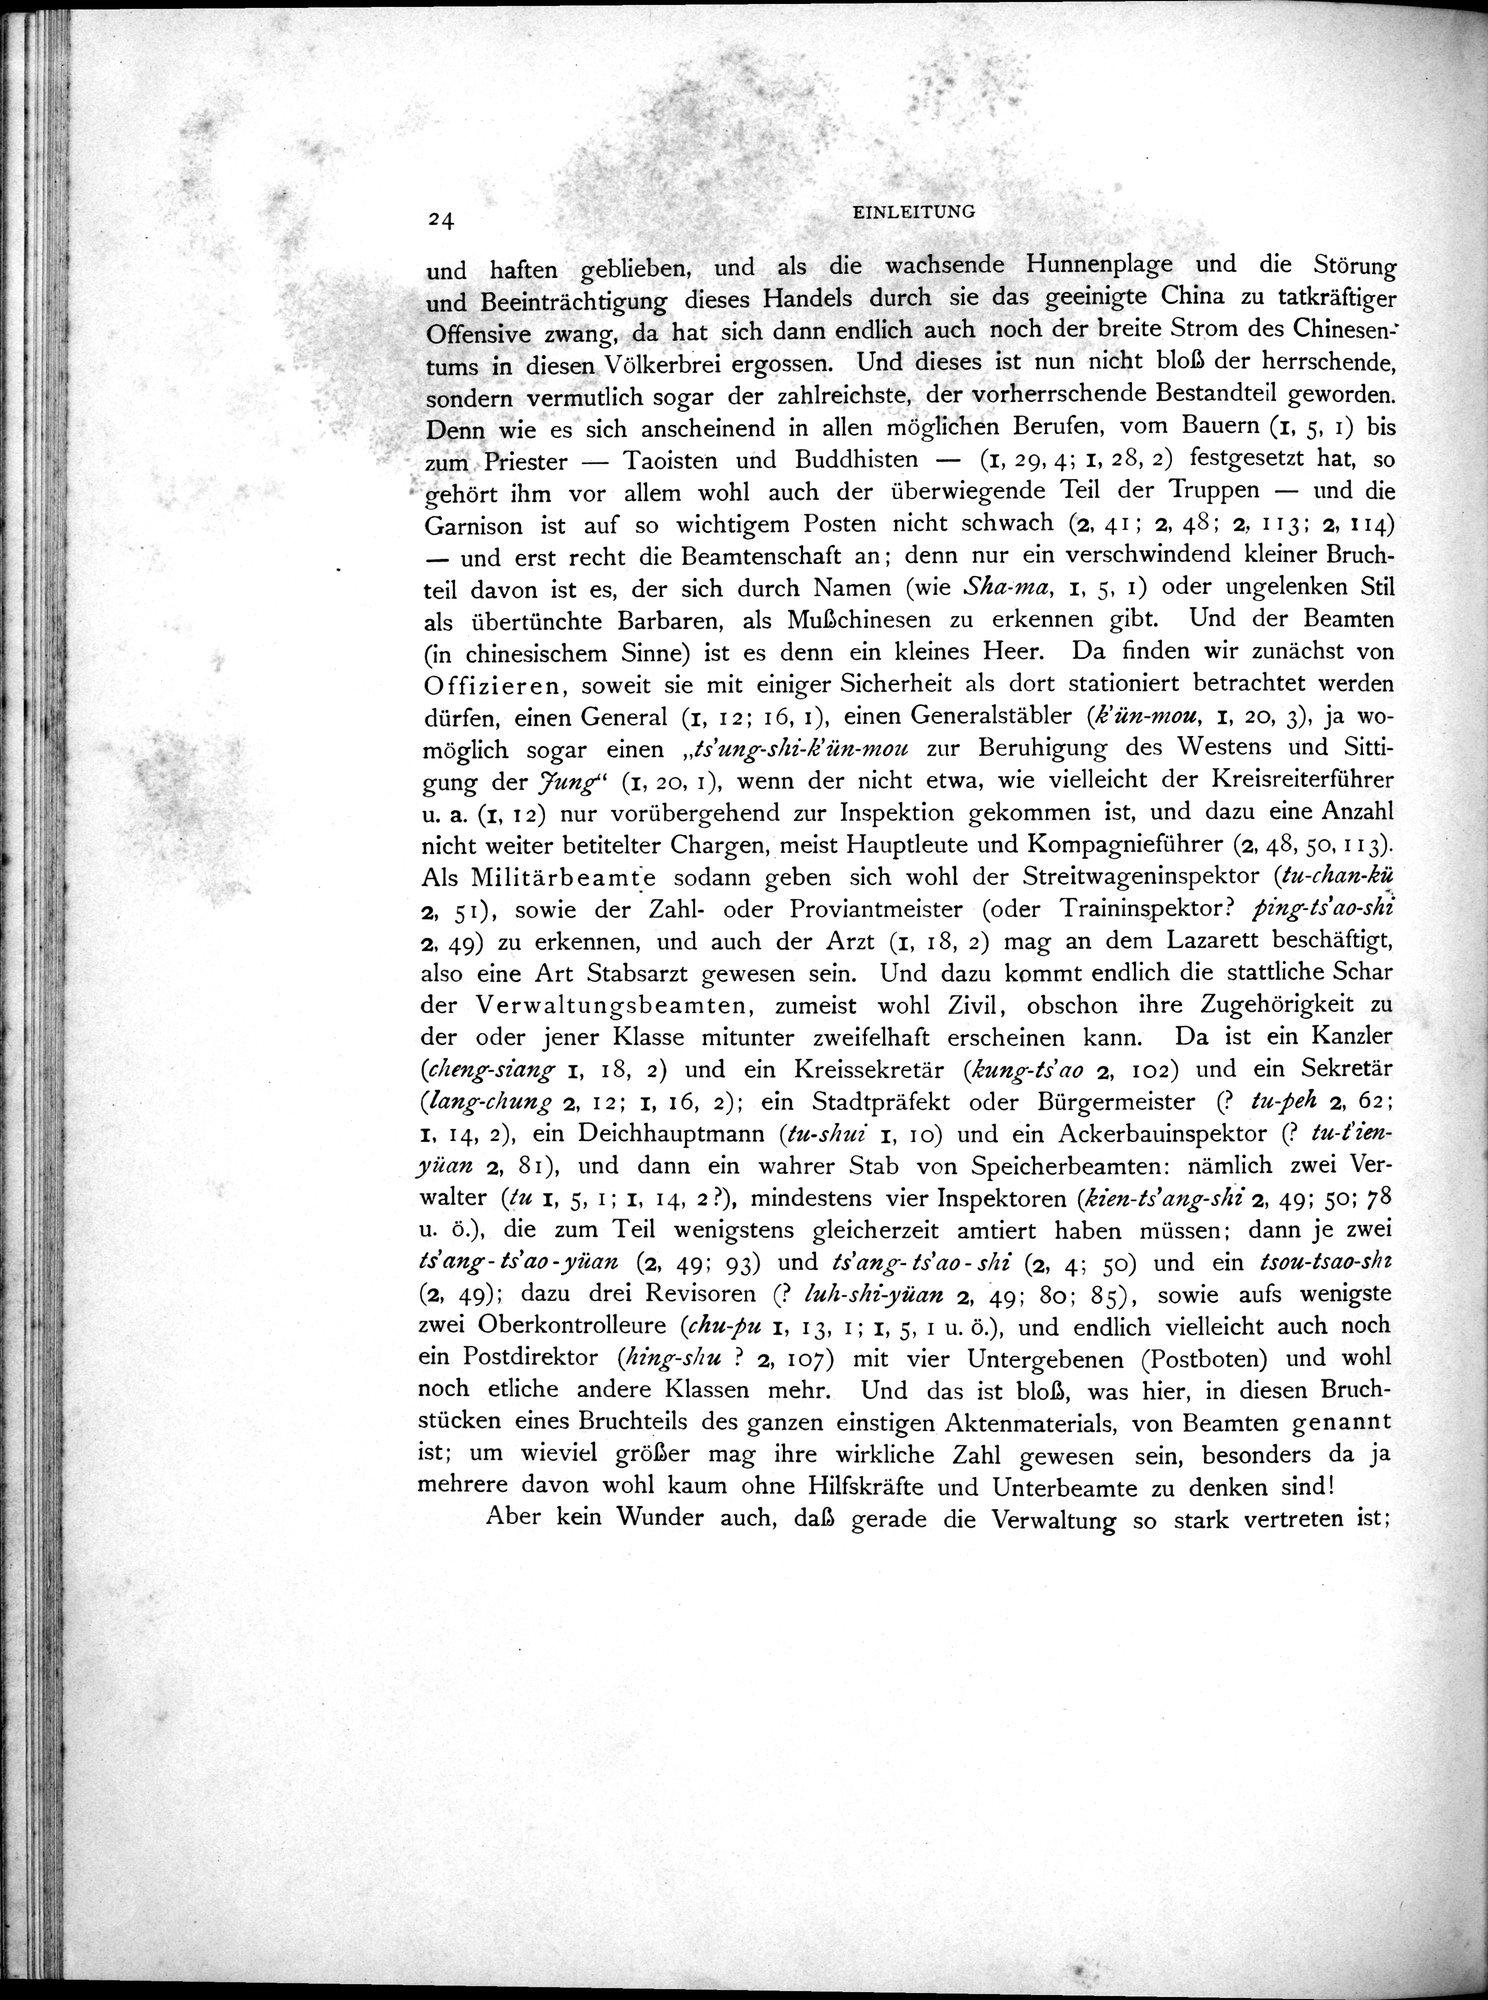 Die Chinesischen Handschriften- und sonstigen Kleinfunde Sven Hedins in Lou-lan : vol.1 / Page 48 (Grayscale High Resolution Image)